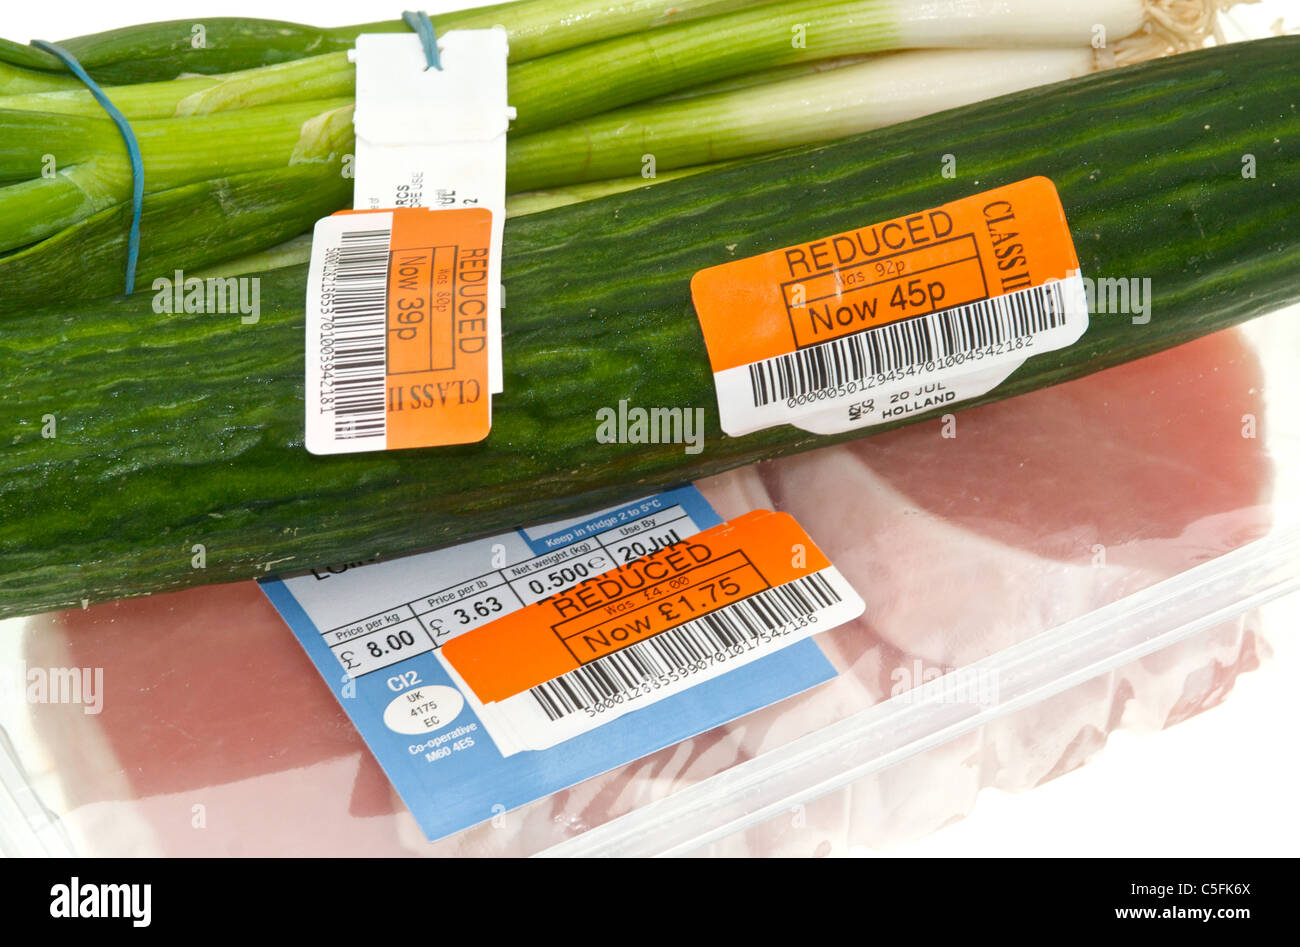 Sonderpreis-Etiketten auf Lebensmitteln Stockfoto